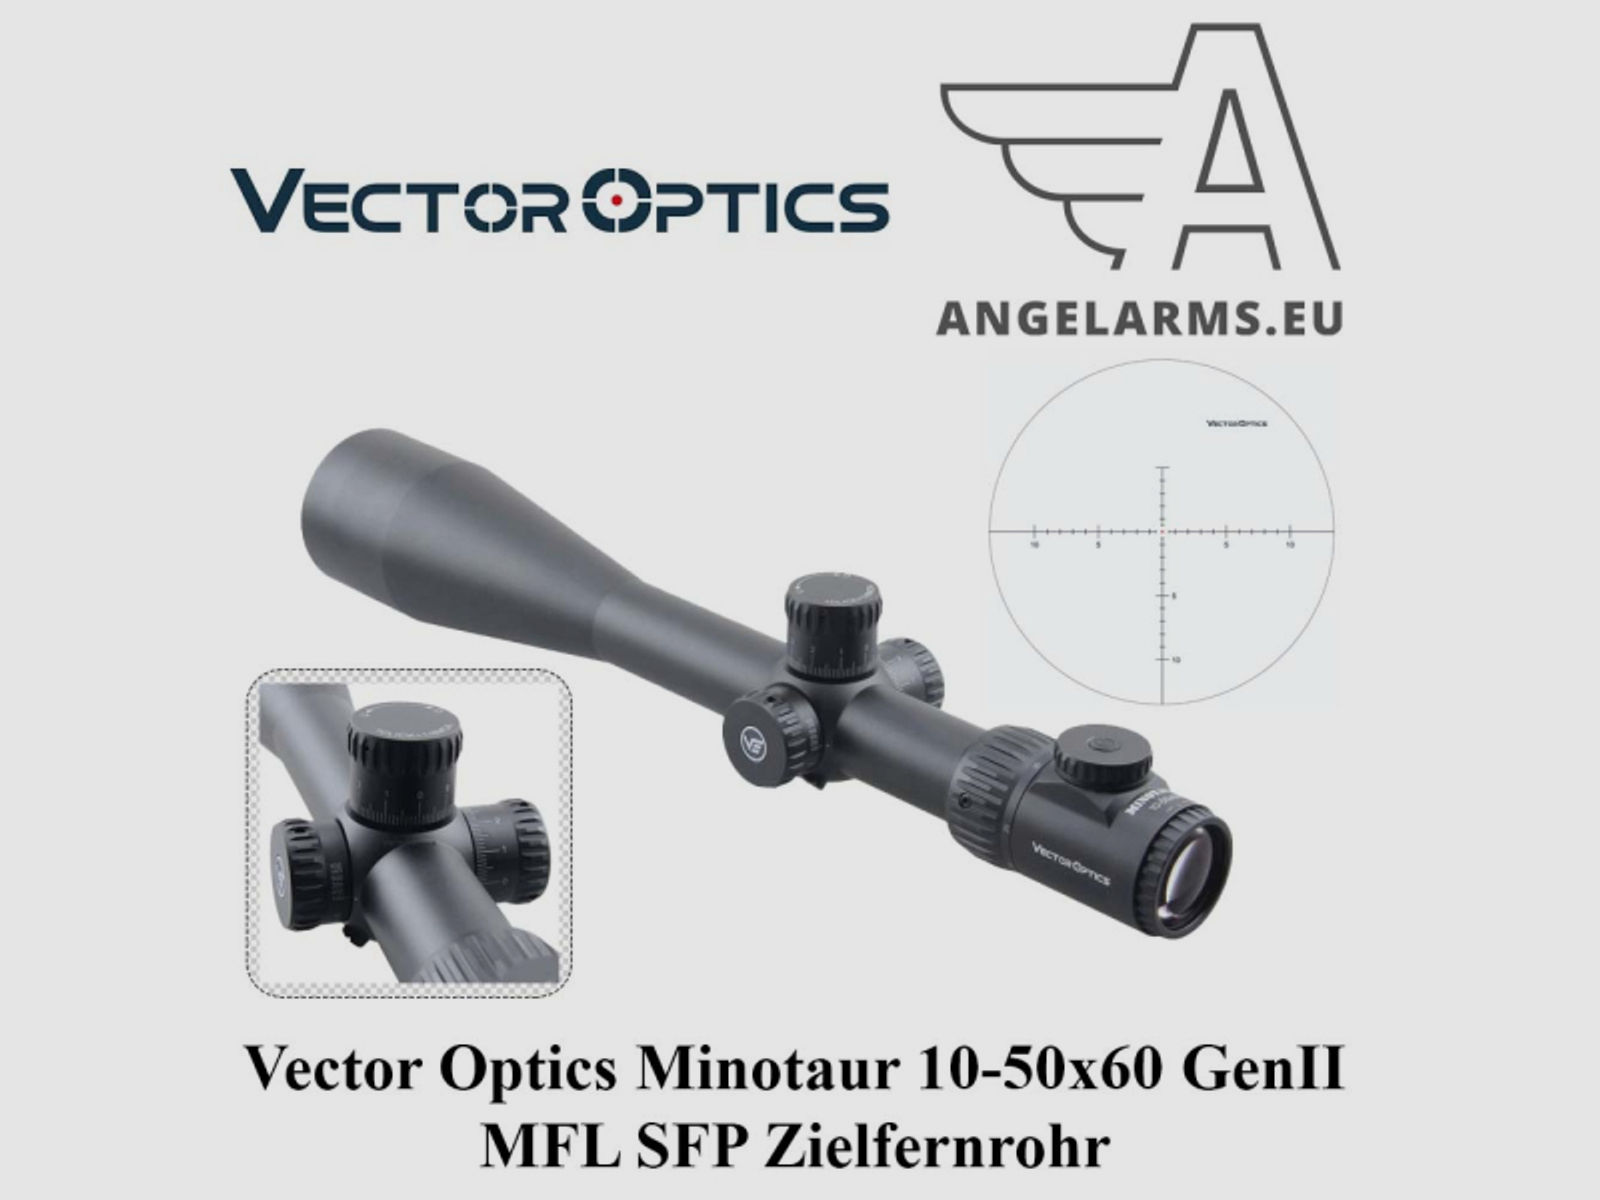 Vector Optics Minotaur 10-50x60 GenII MFL SFP Zielfernrohr www.angelarms.eu